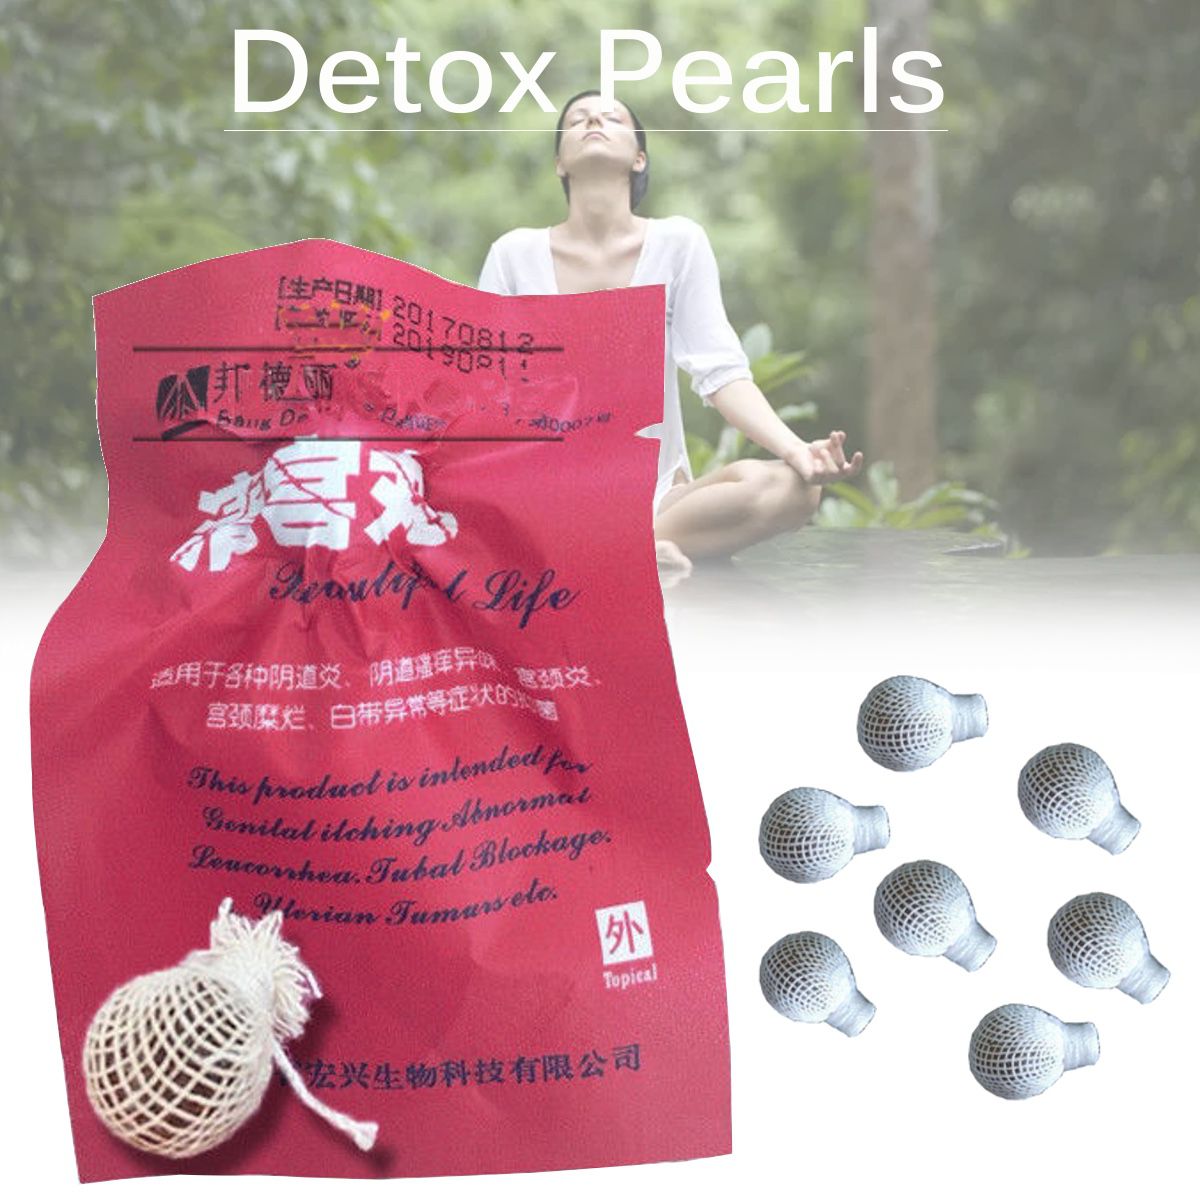 LOT of 24 Original Yoni Detox Pearls Tampon Vagi